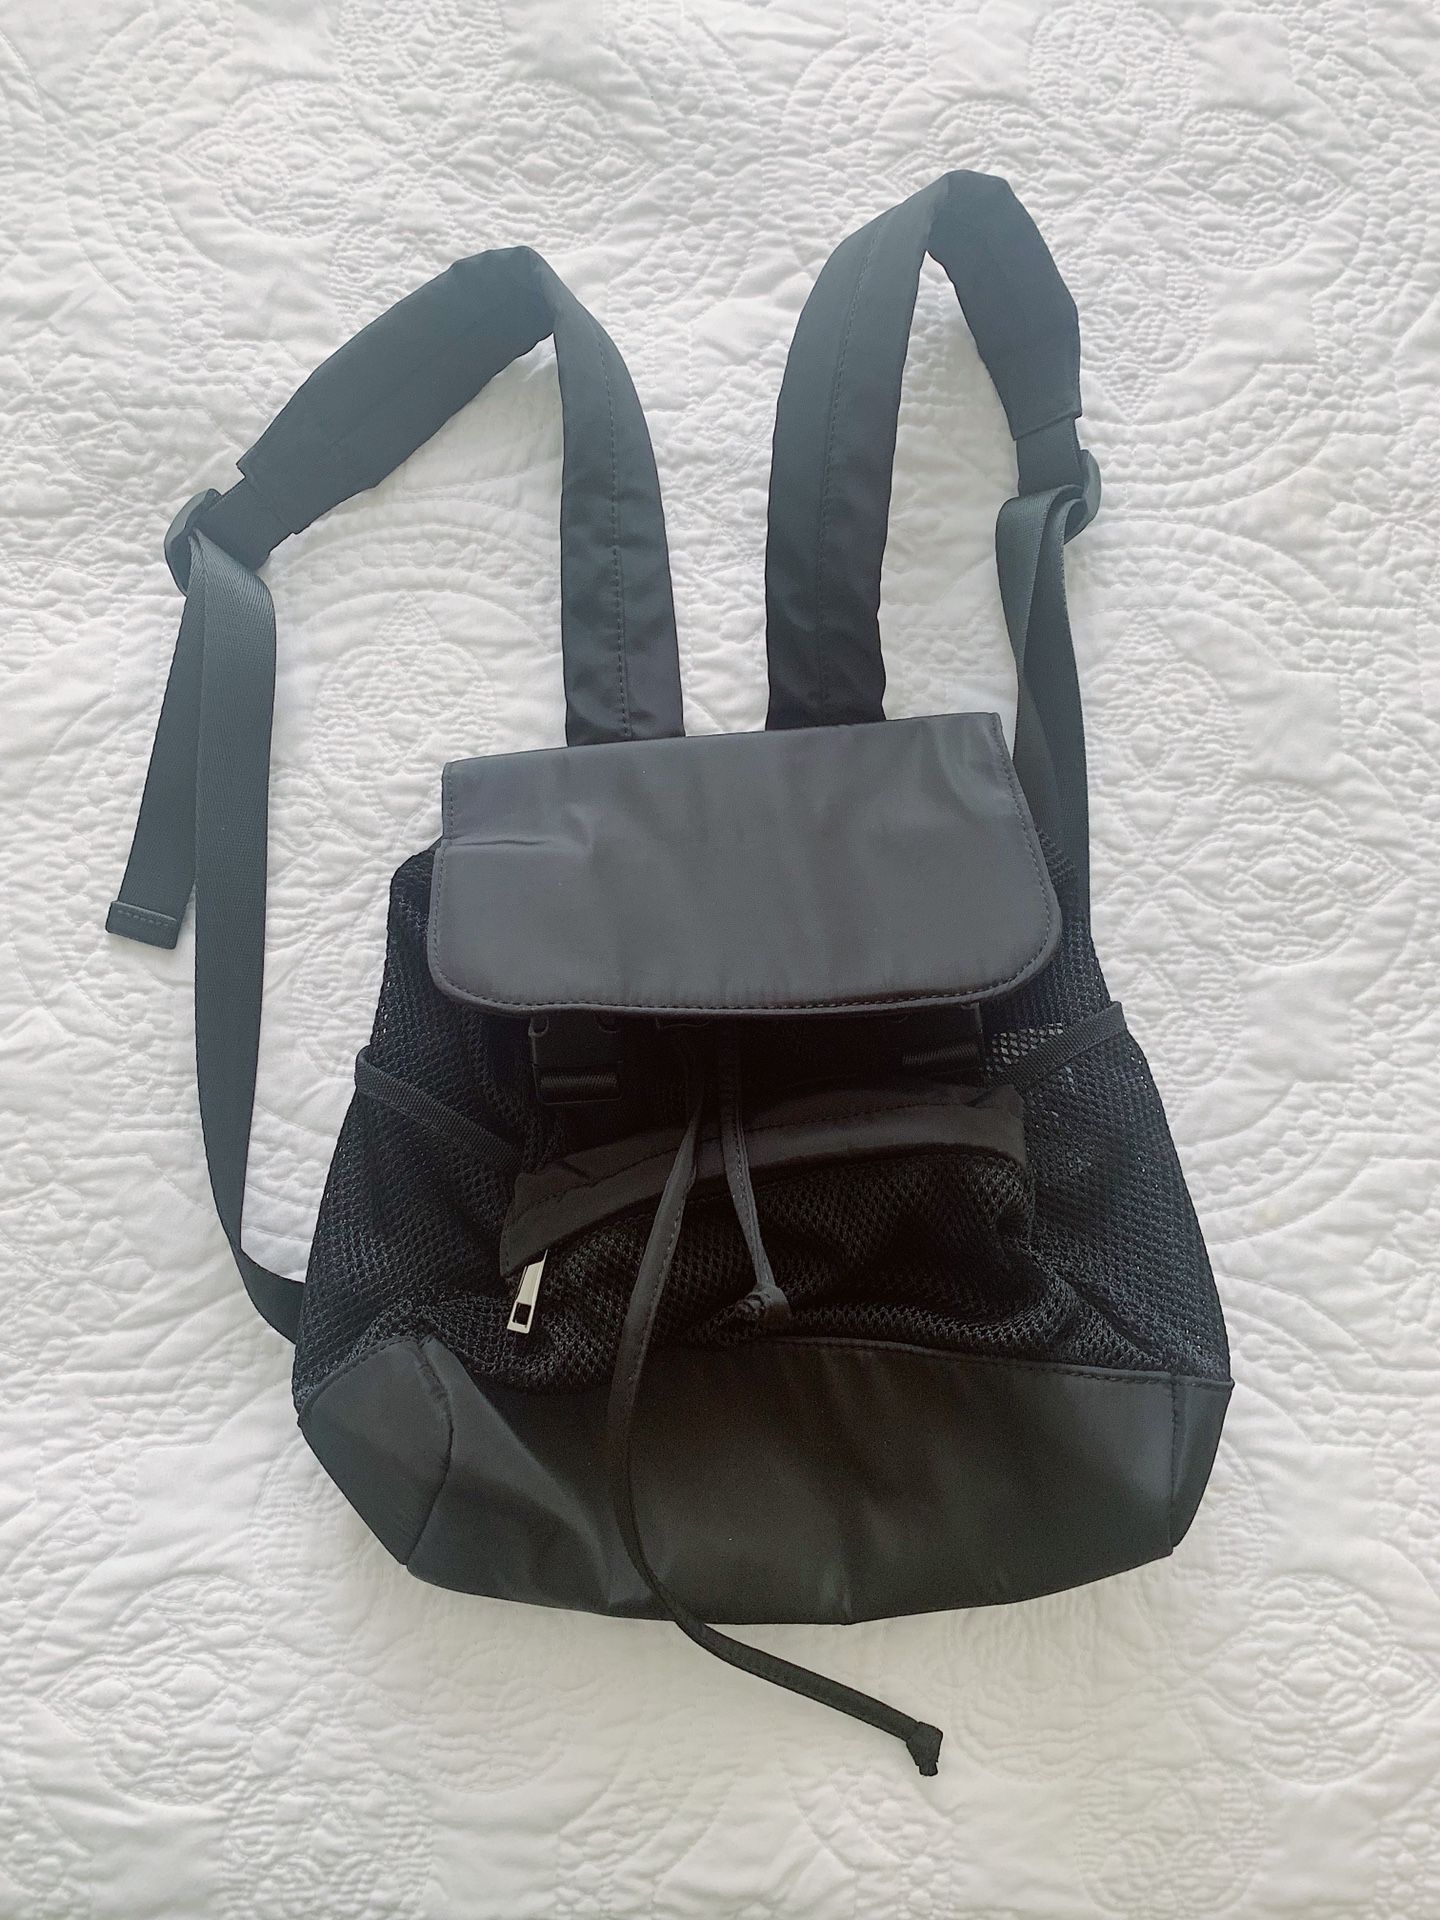 Sheet mesh backpack - brand new